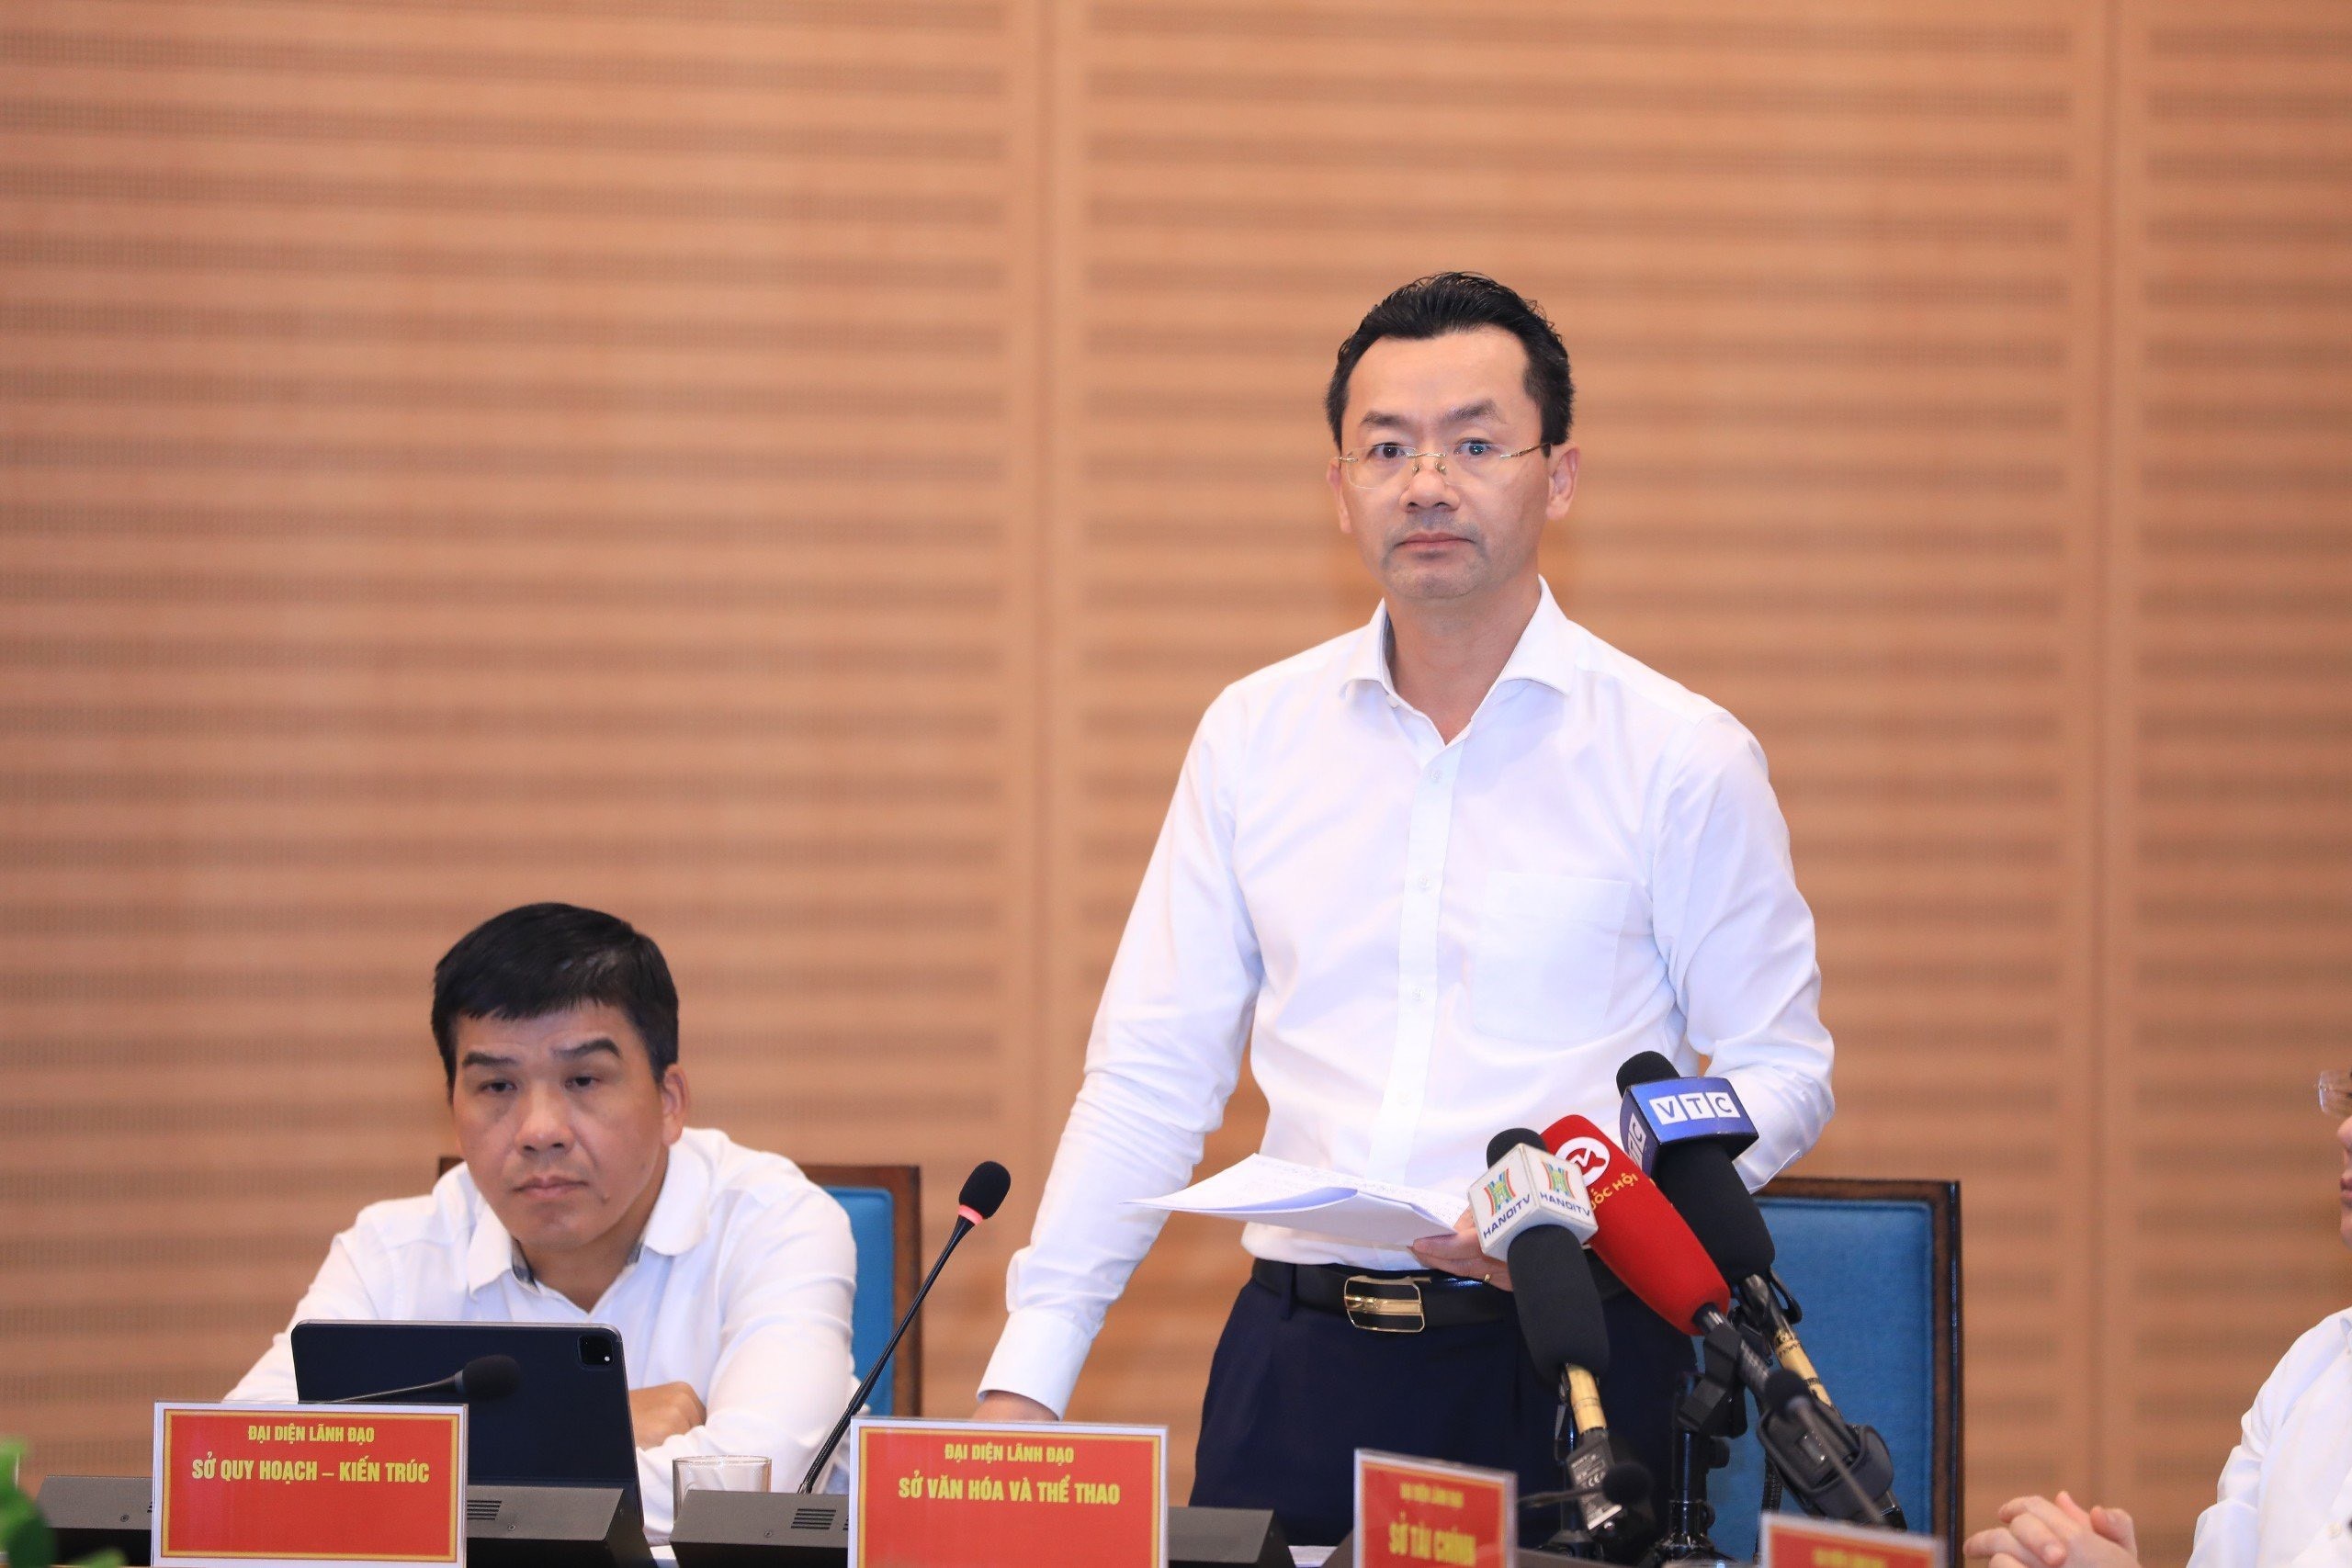 Chính sách - Hà Nội: Tạm dừng công nhận câu lạc bộ poker